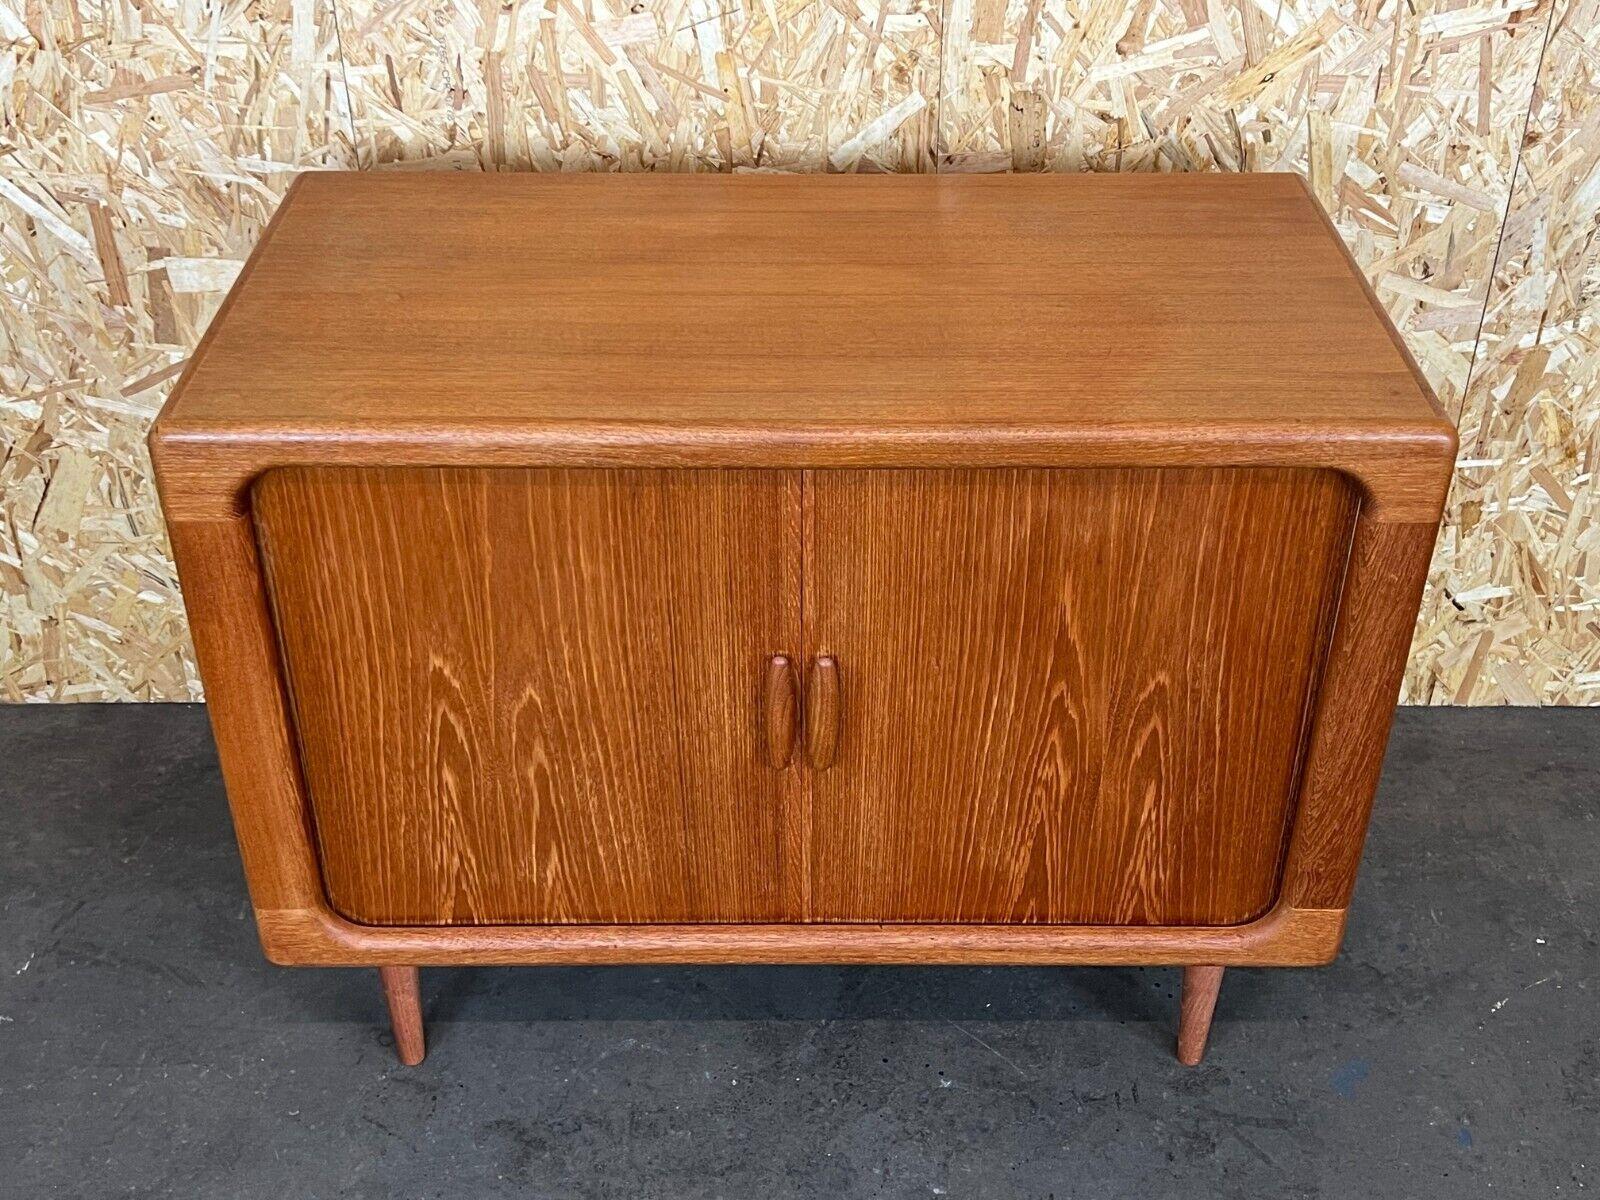 Late 20th Century 1960s-1970s Teak Dyrlund Sideboard Credenza Cabinet Danish Modern Design